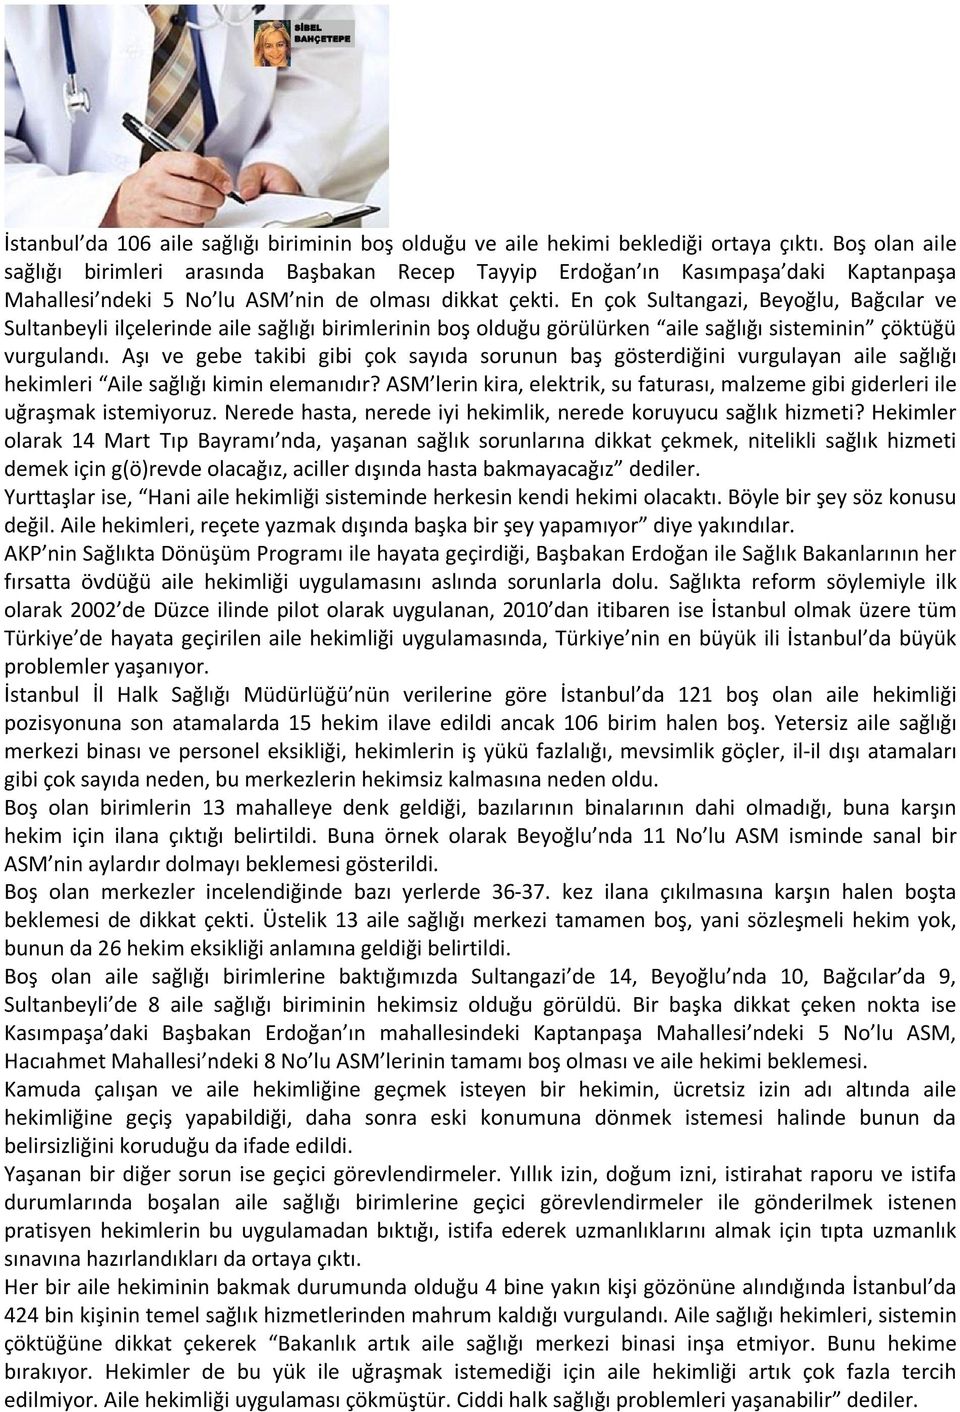 En çok Sultangazi, Beyoğlu, Bağcılar ve Sultanbeyli ilçelerinde aile sağlığı birimlerinin boş olduğu görülürken aile sağlığı sisteminin çöktüğü vurgulandı.